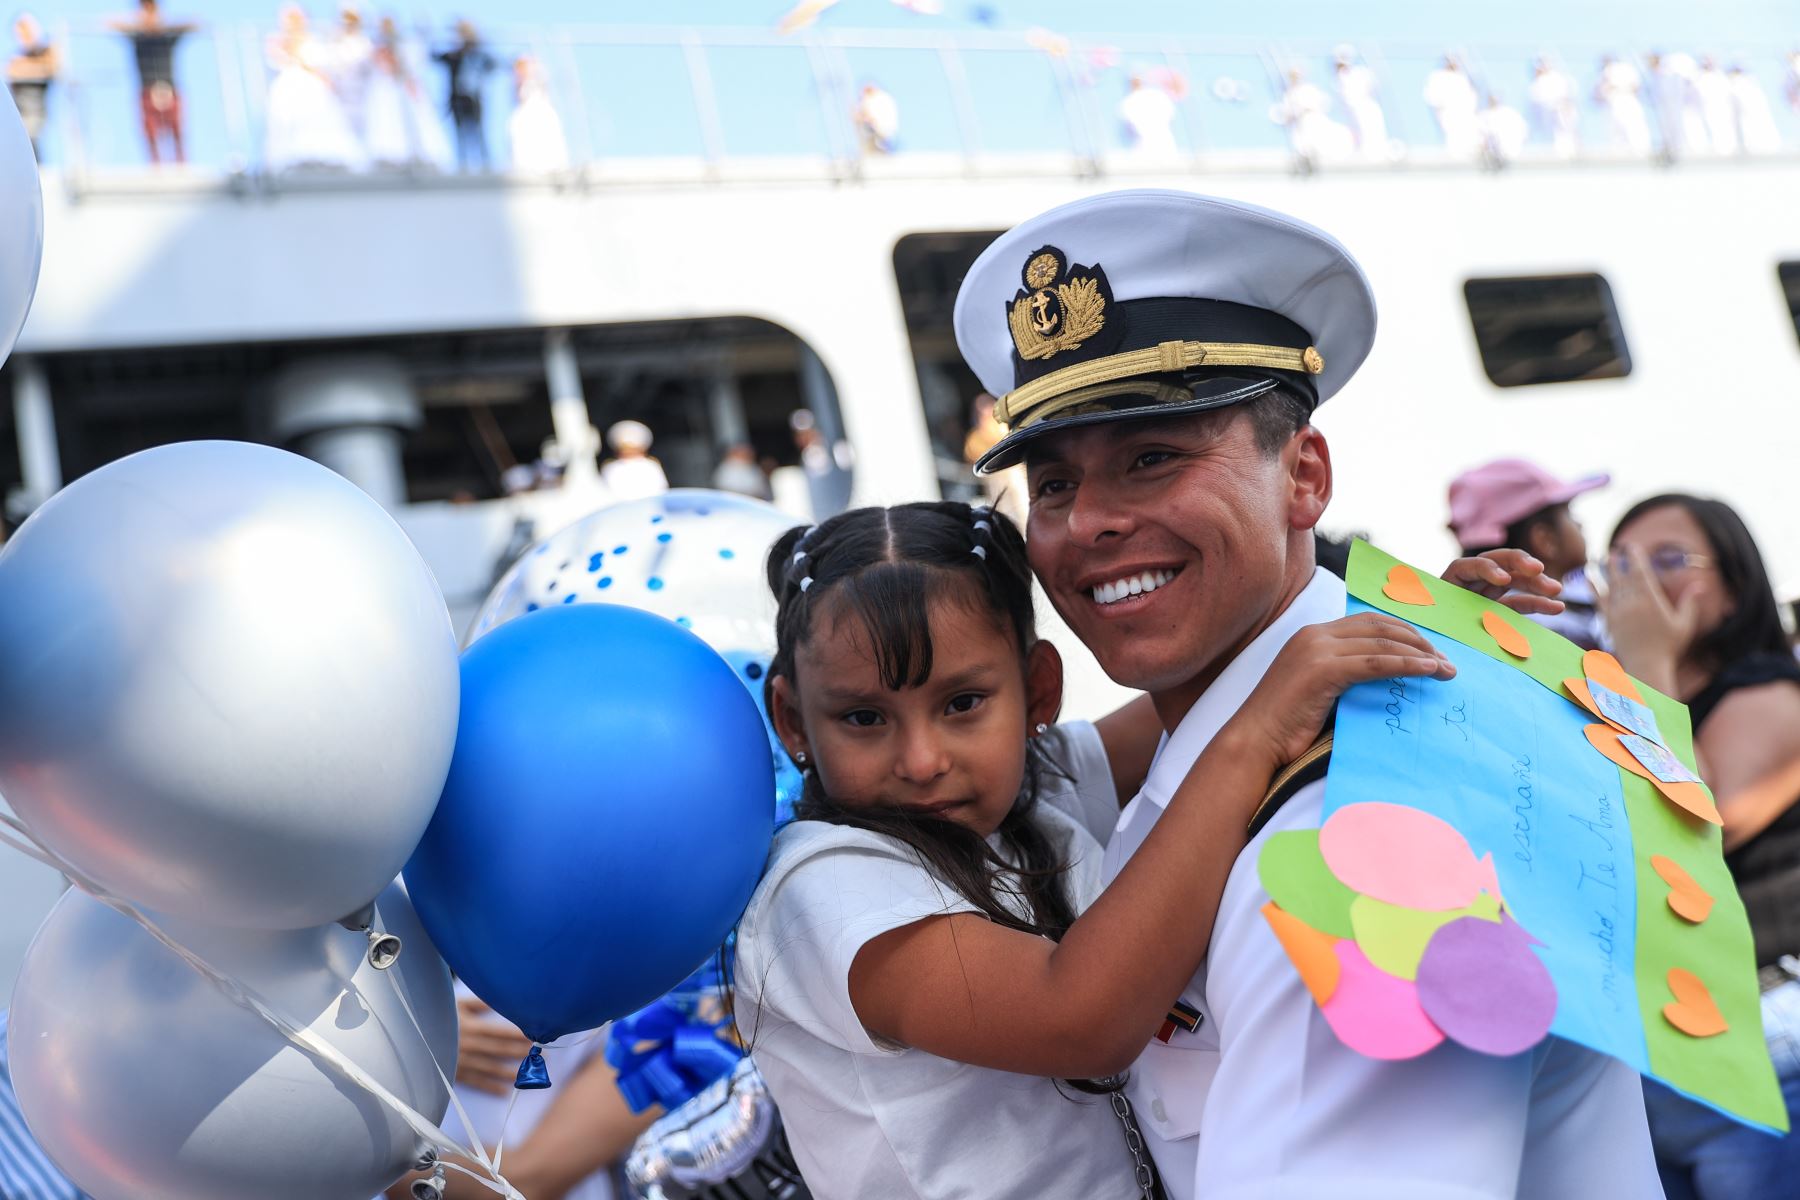 Miembros de la tripulación del buque escuela a vela B.A.P. Unión conocieron a sus bebés luego de su retorno al Perú. Fotos: ANDINA/Jhonel Rodríguez Robles